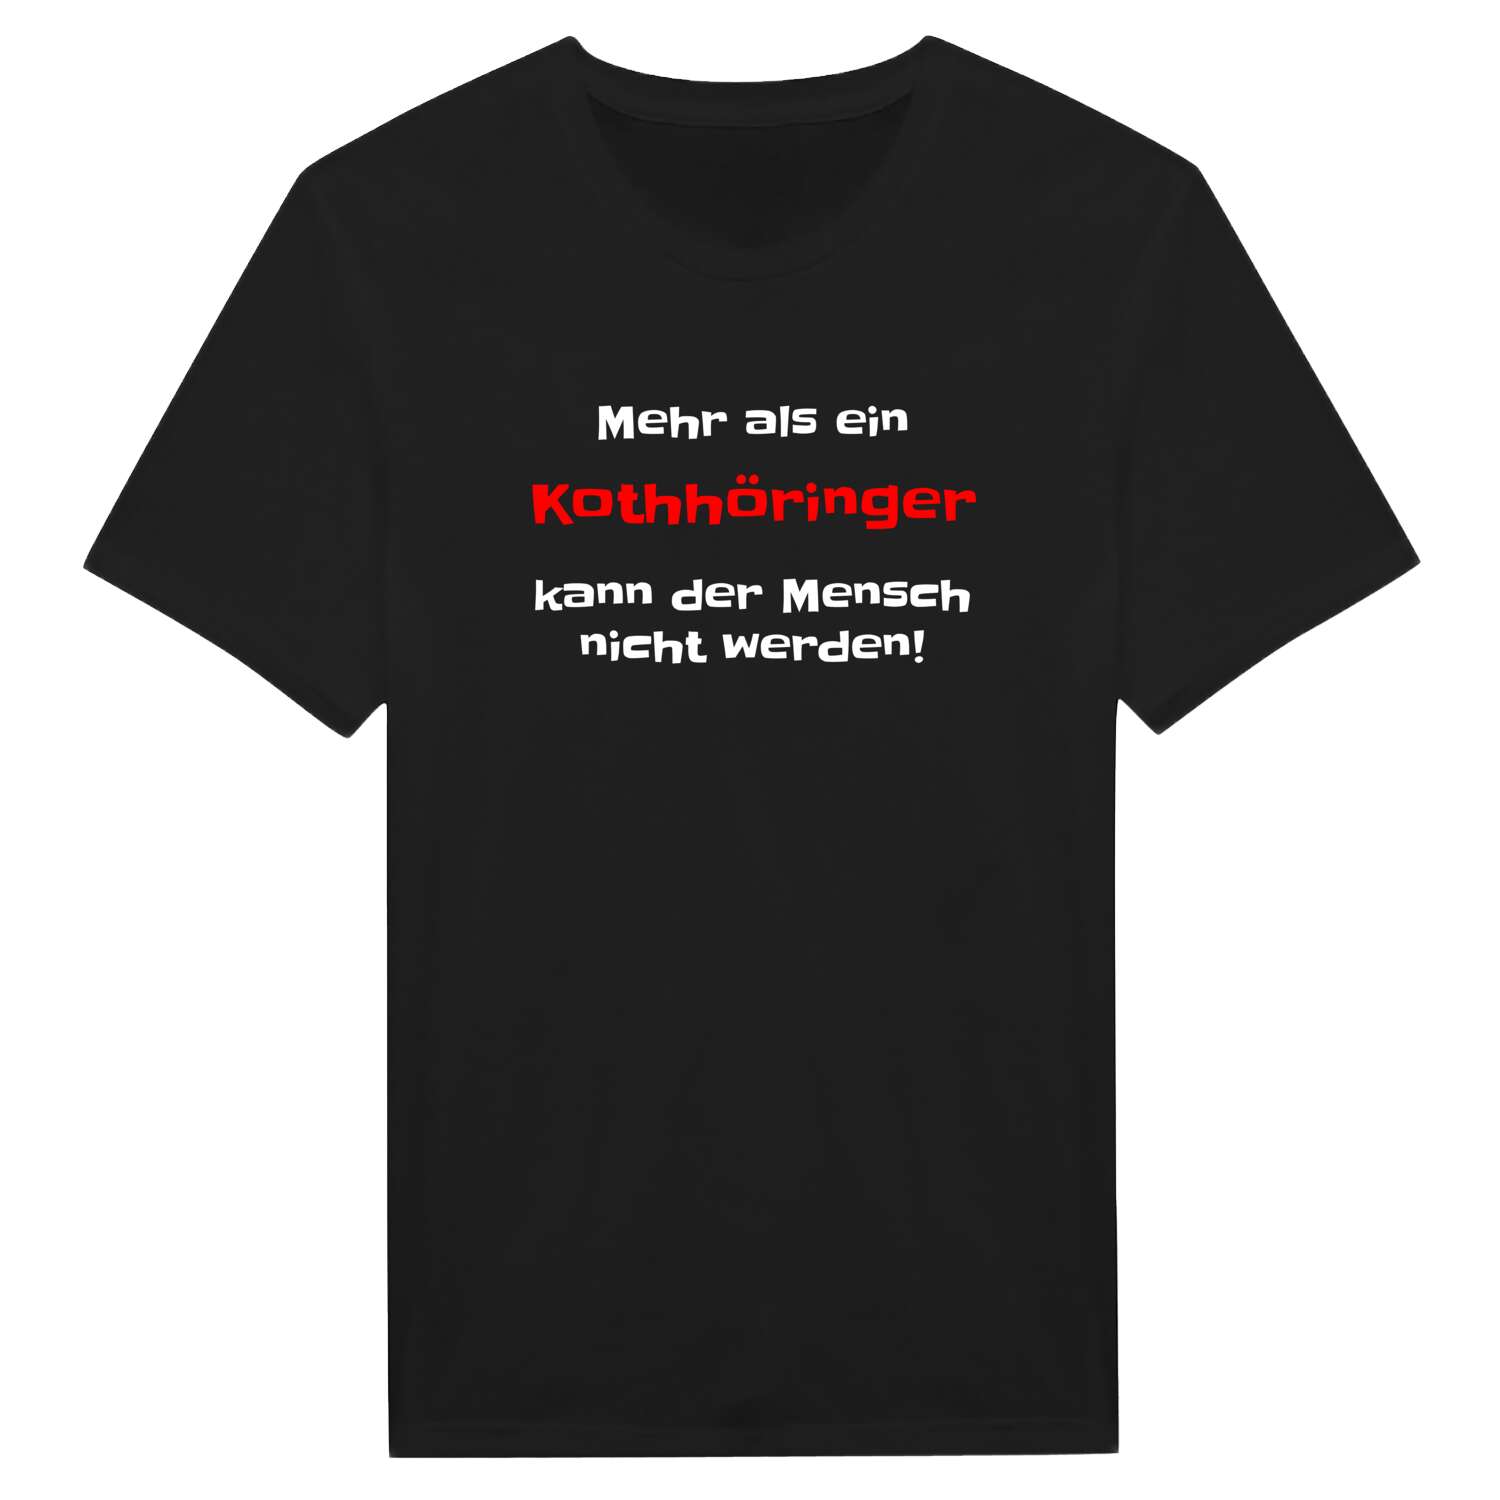 Kothhöring T-Shirt »Mehr als ein«